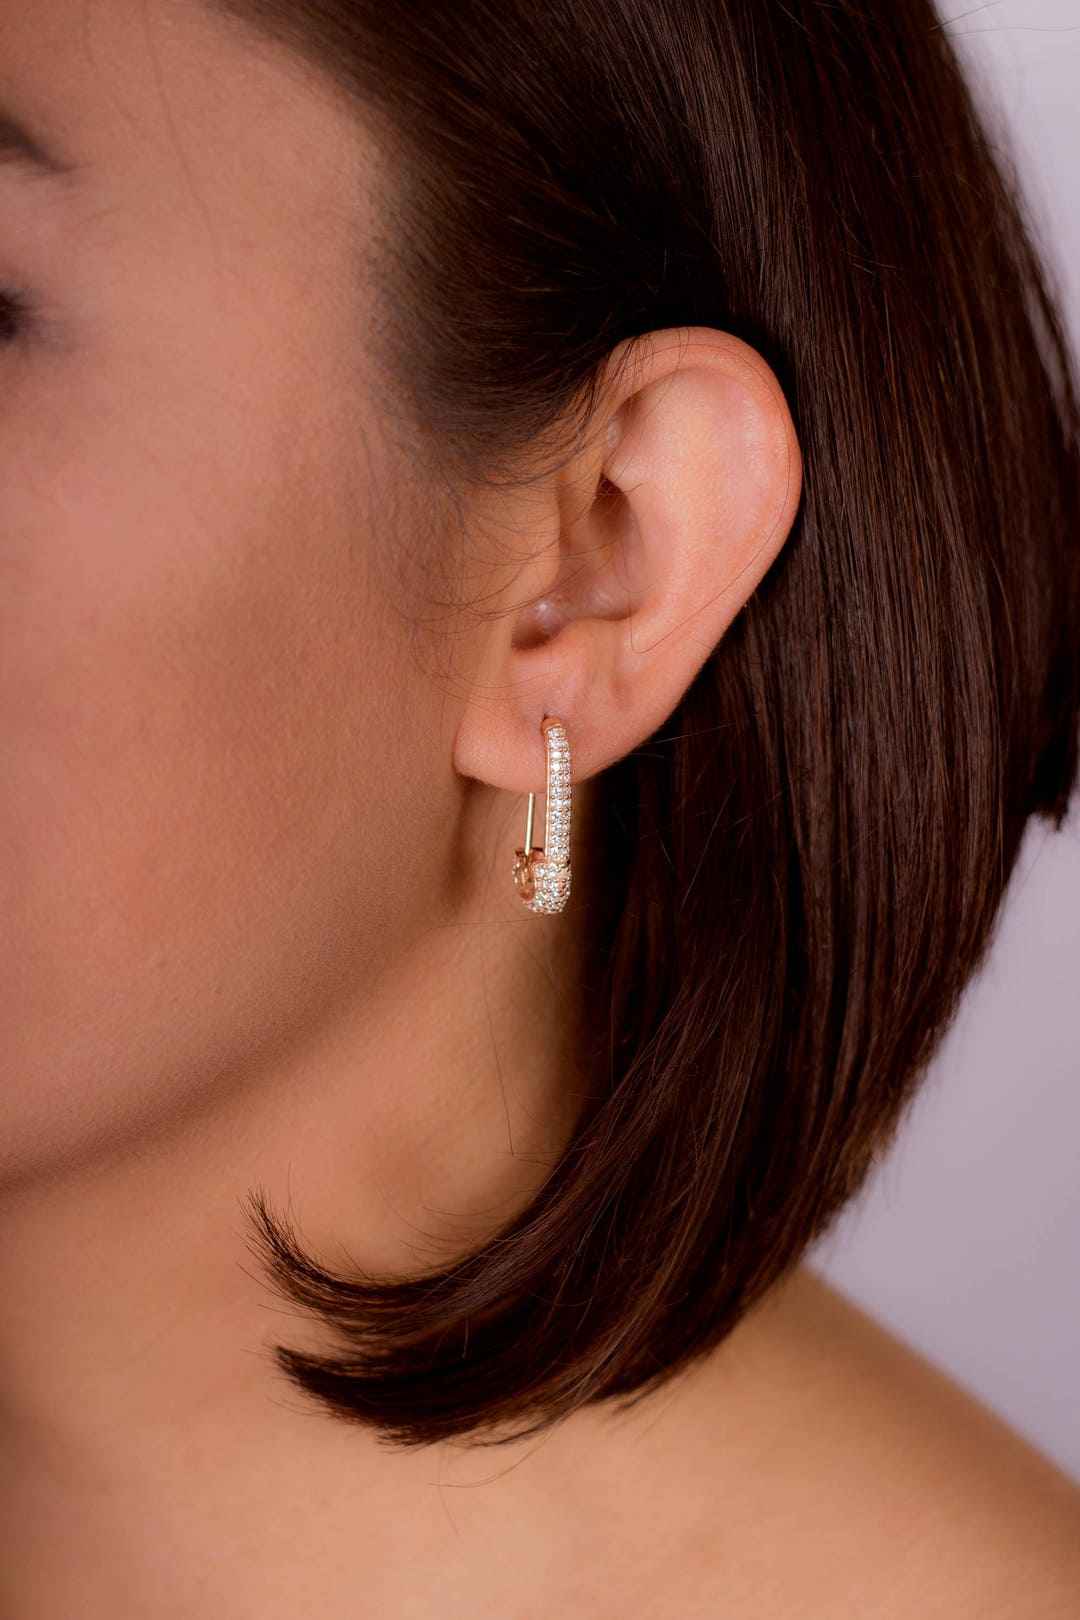 Pin Earrings Safety Ear Studs Dangle Punk Stainless Steel Piercing Women  Jewelry